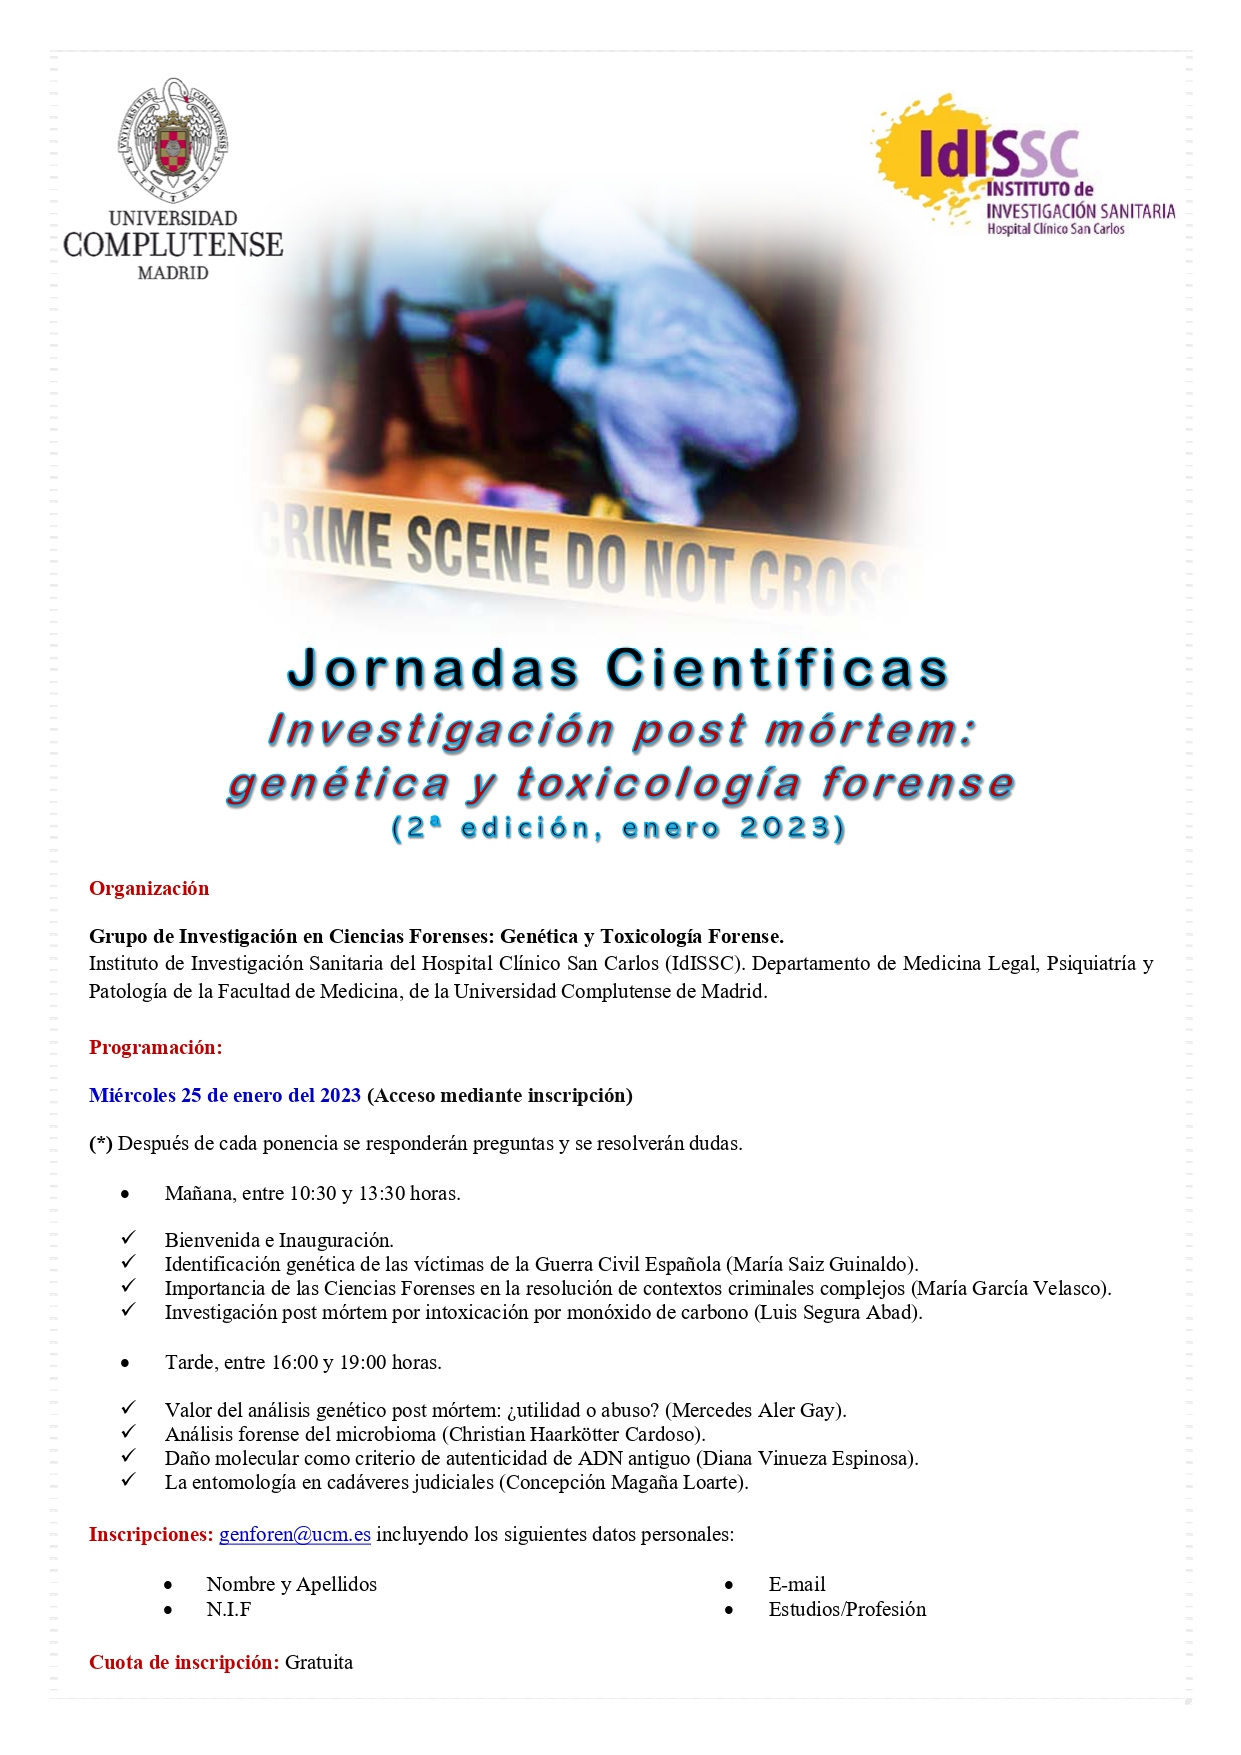 Jornadas científicas. Investigación post mortem: genética y toxicología forense.